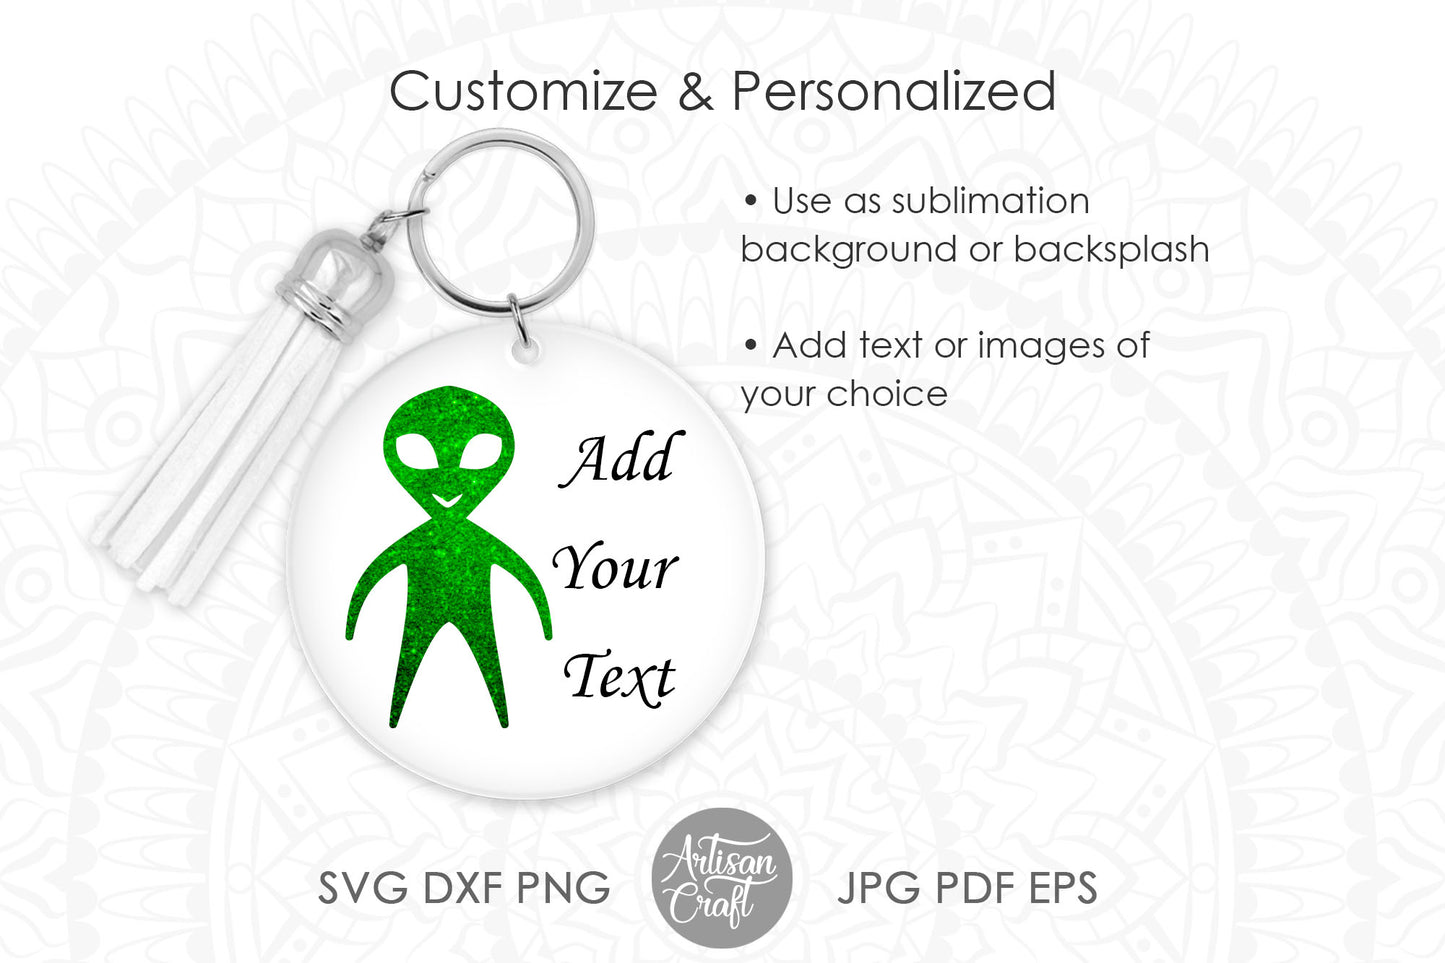 Alien keychain SVG